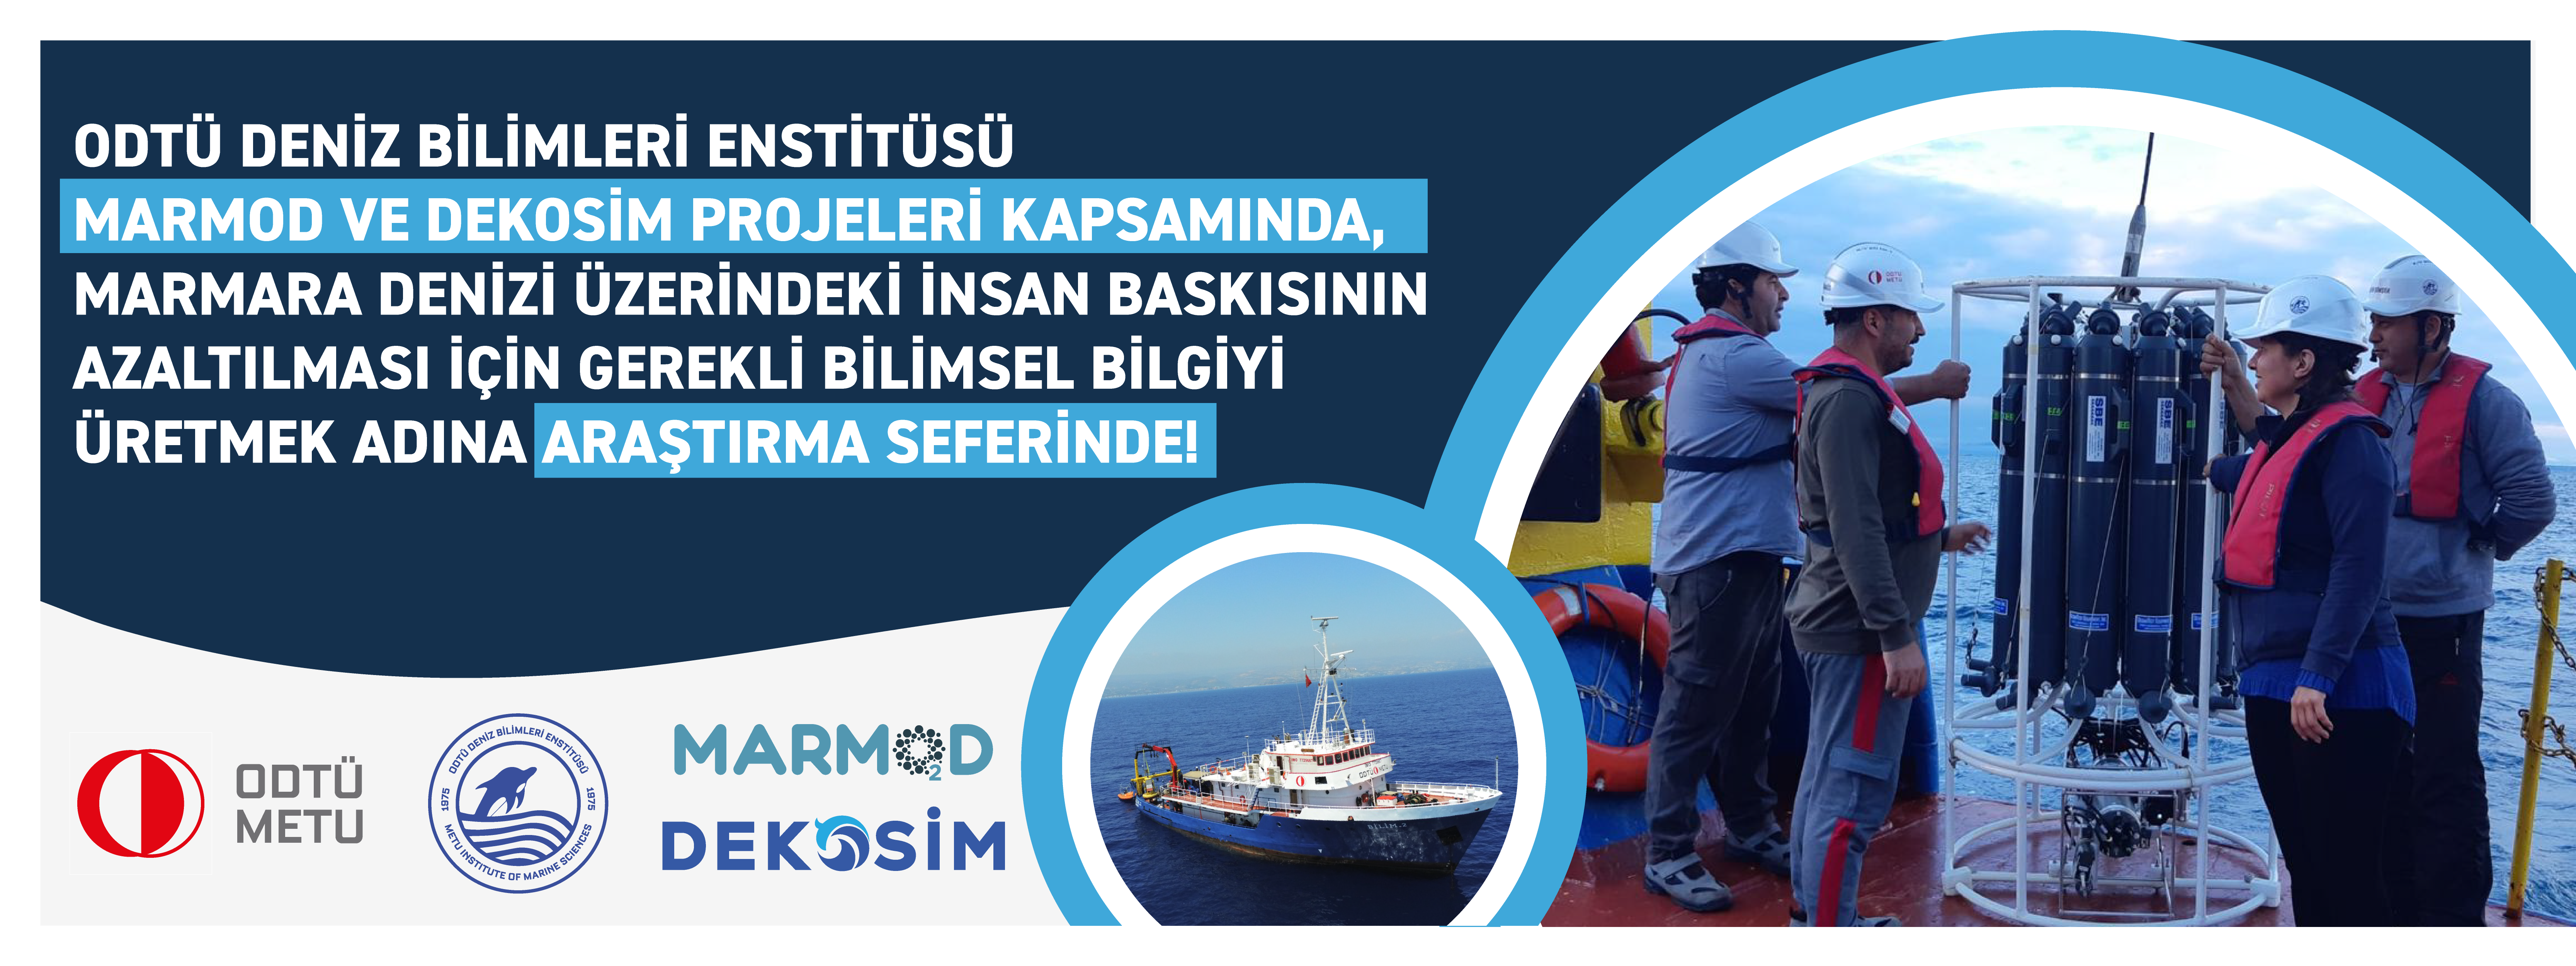 ODTÜ Marmara Denizi’nin Geleceği İçin Çalışmalar Gerçekleştiriyor